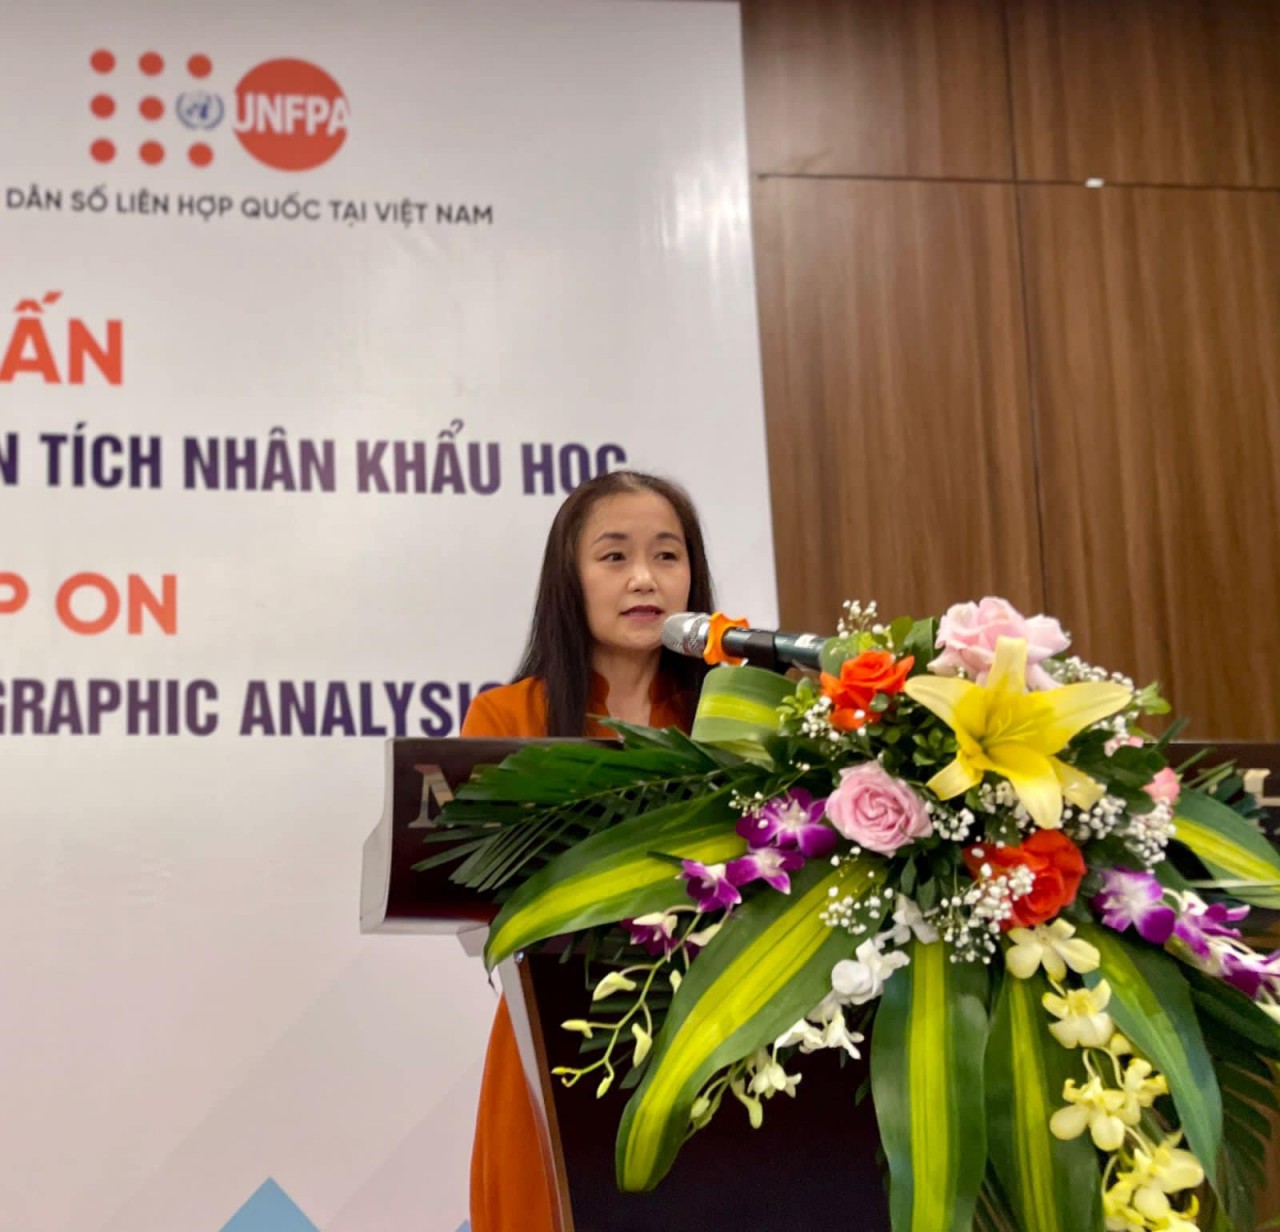 Bà Naomi Kitahara tại Hội nghị tập huấn về các mô hình thống kê nâng cao trong phân tích nhân khẩu học. Ảnh: UNFPA